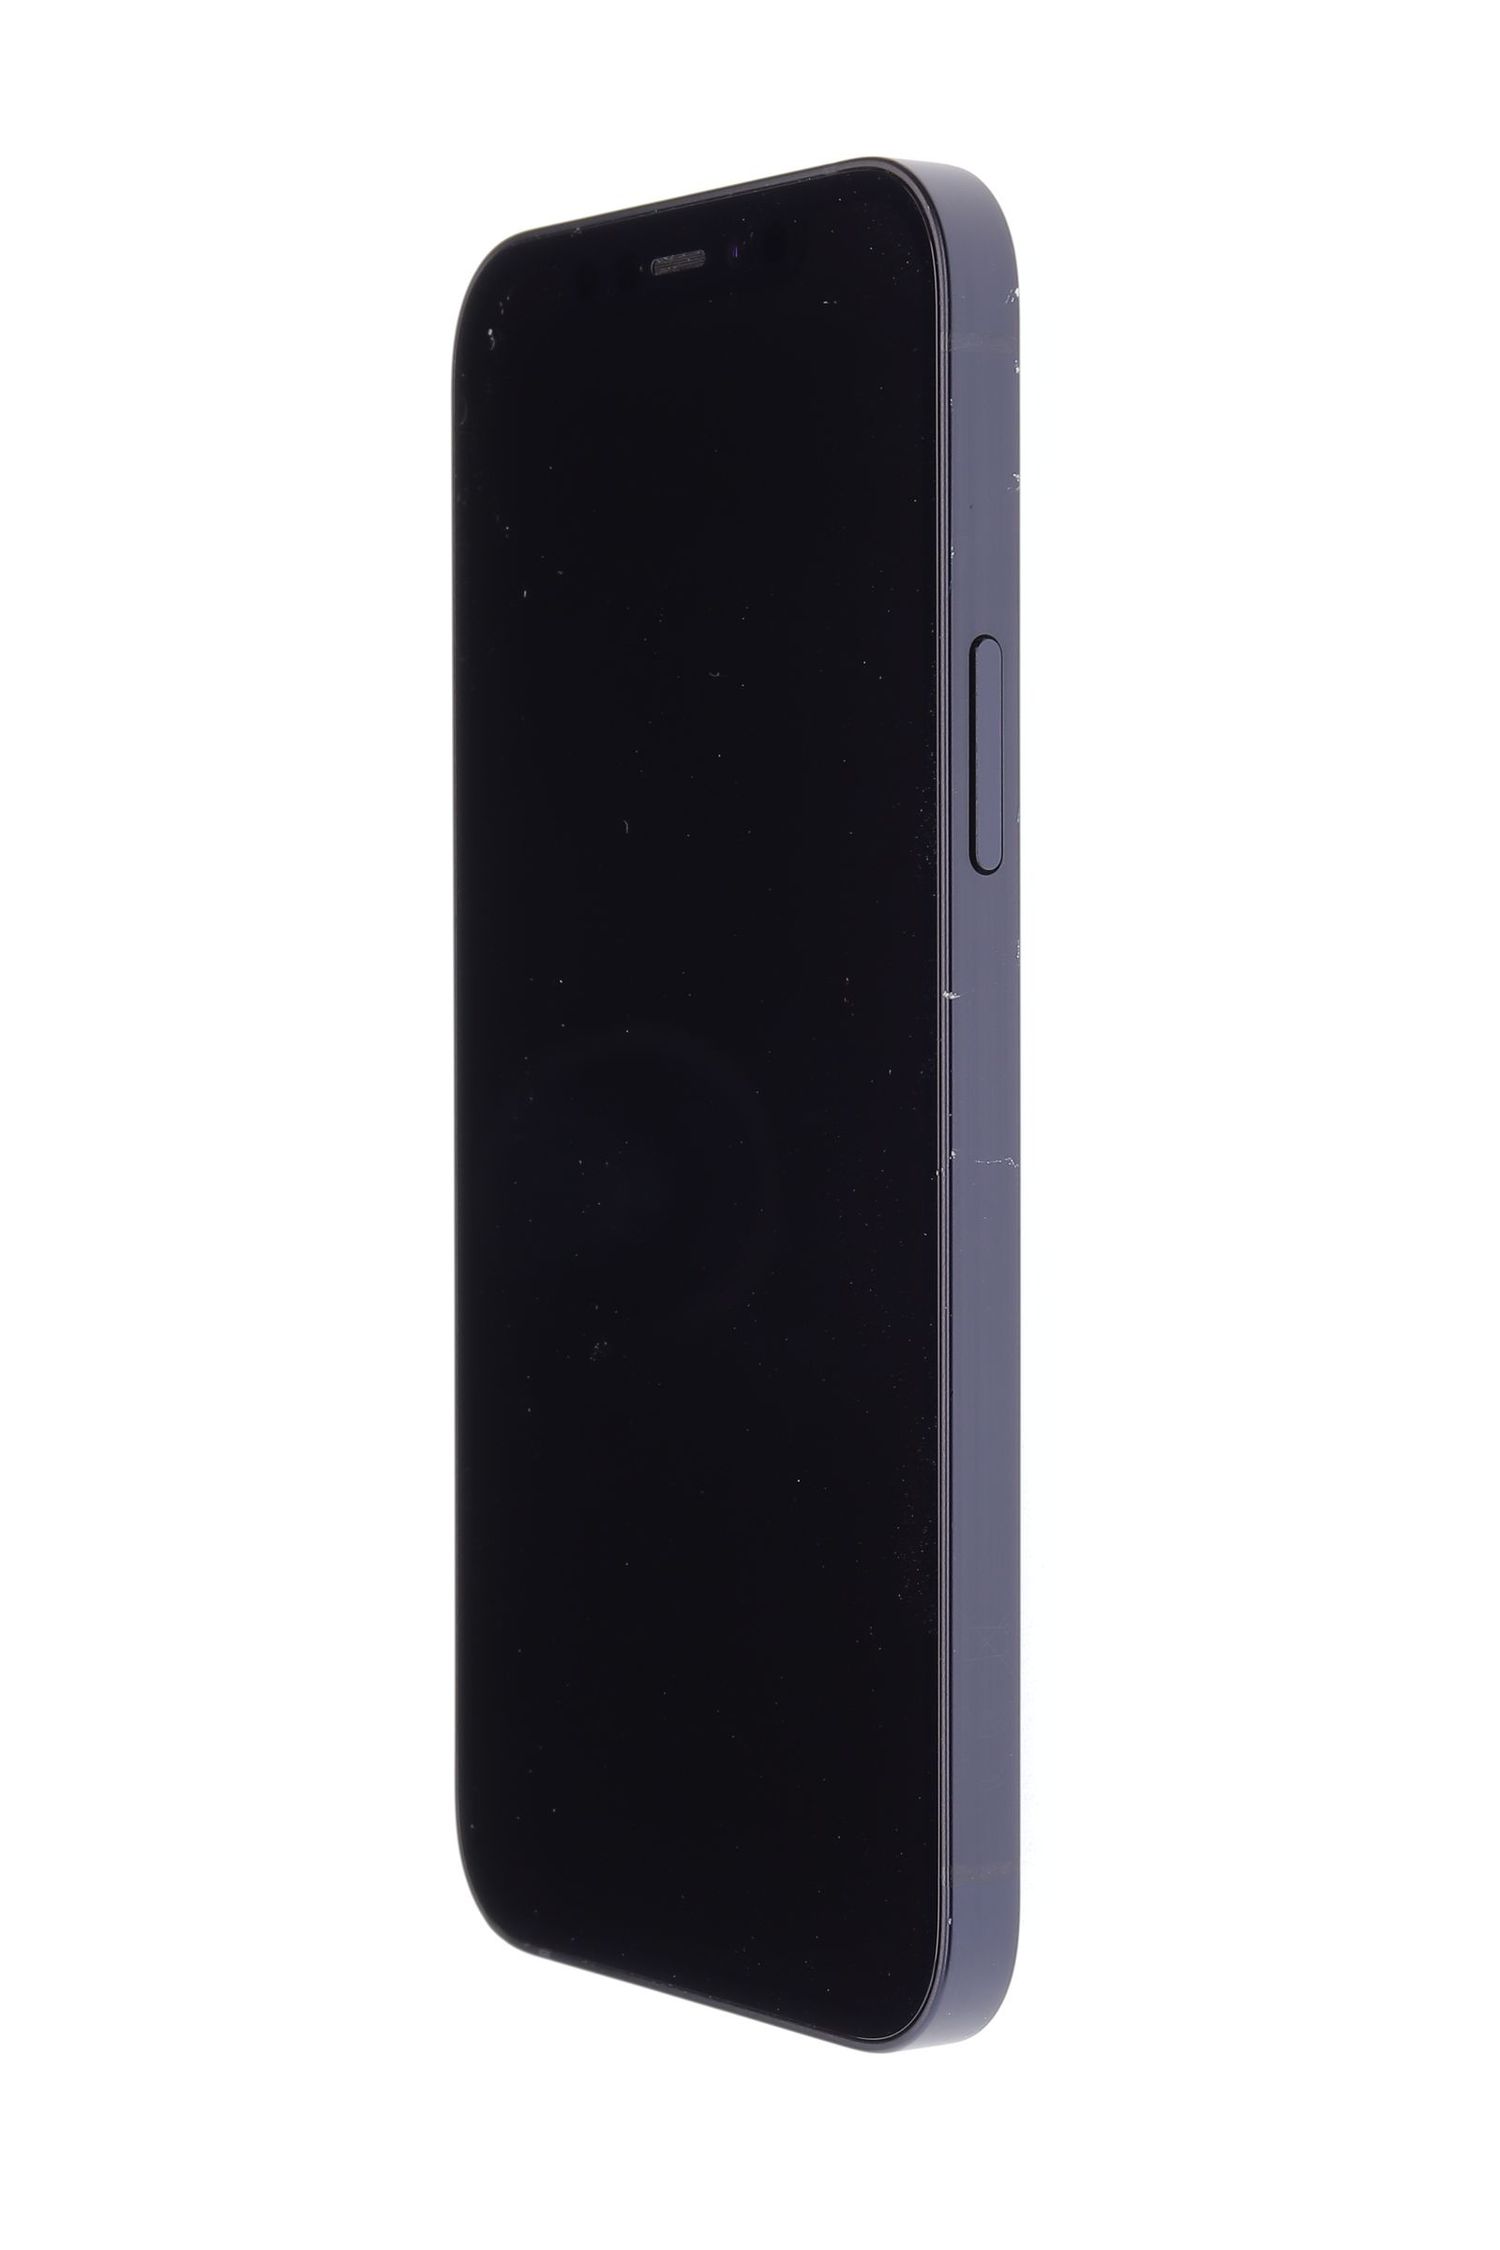 Κινητό τηλέφωνο Apple iPhone 12, Black, 64 GB, Excelent